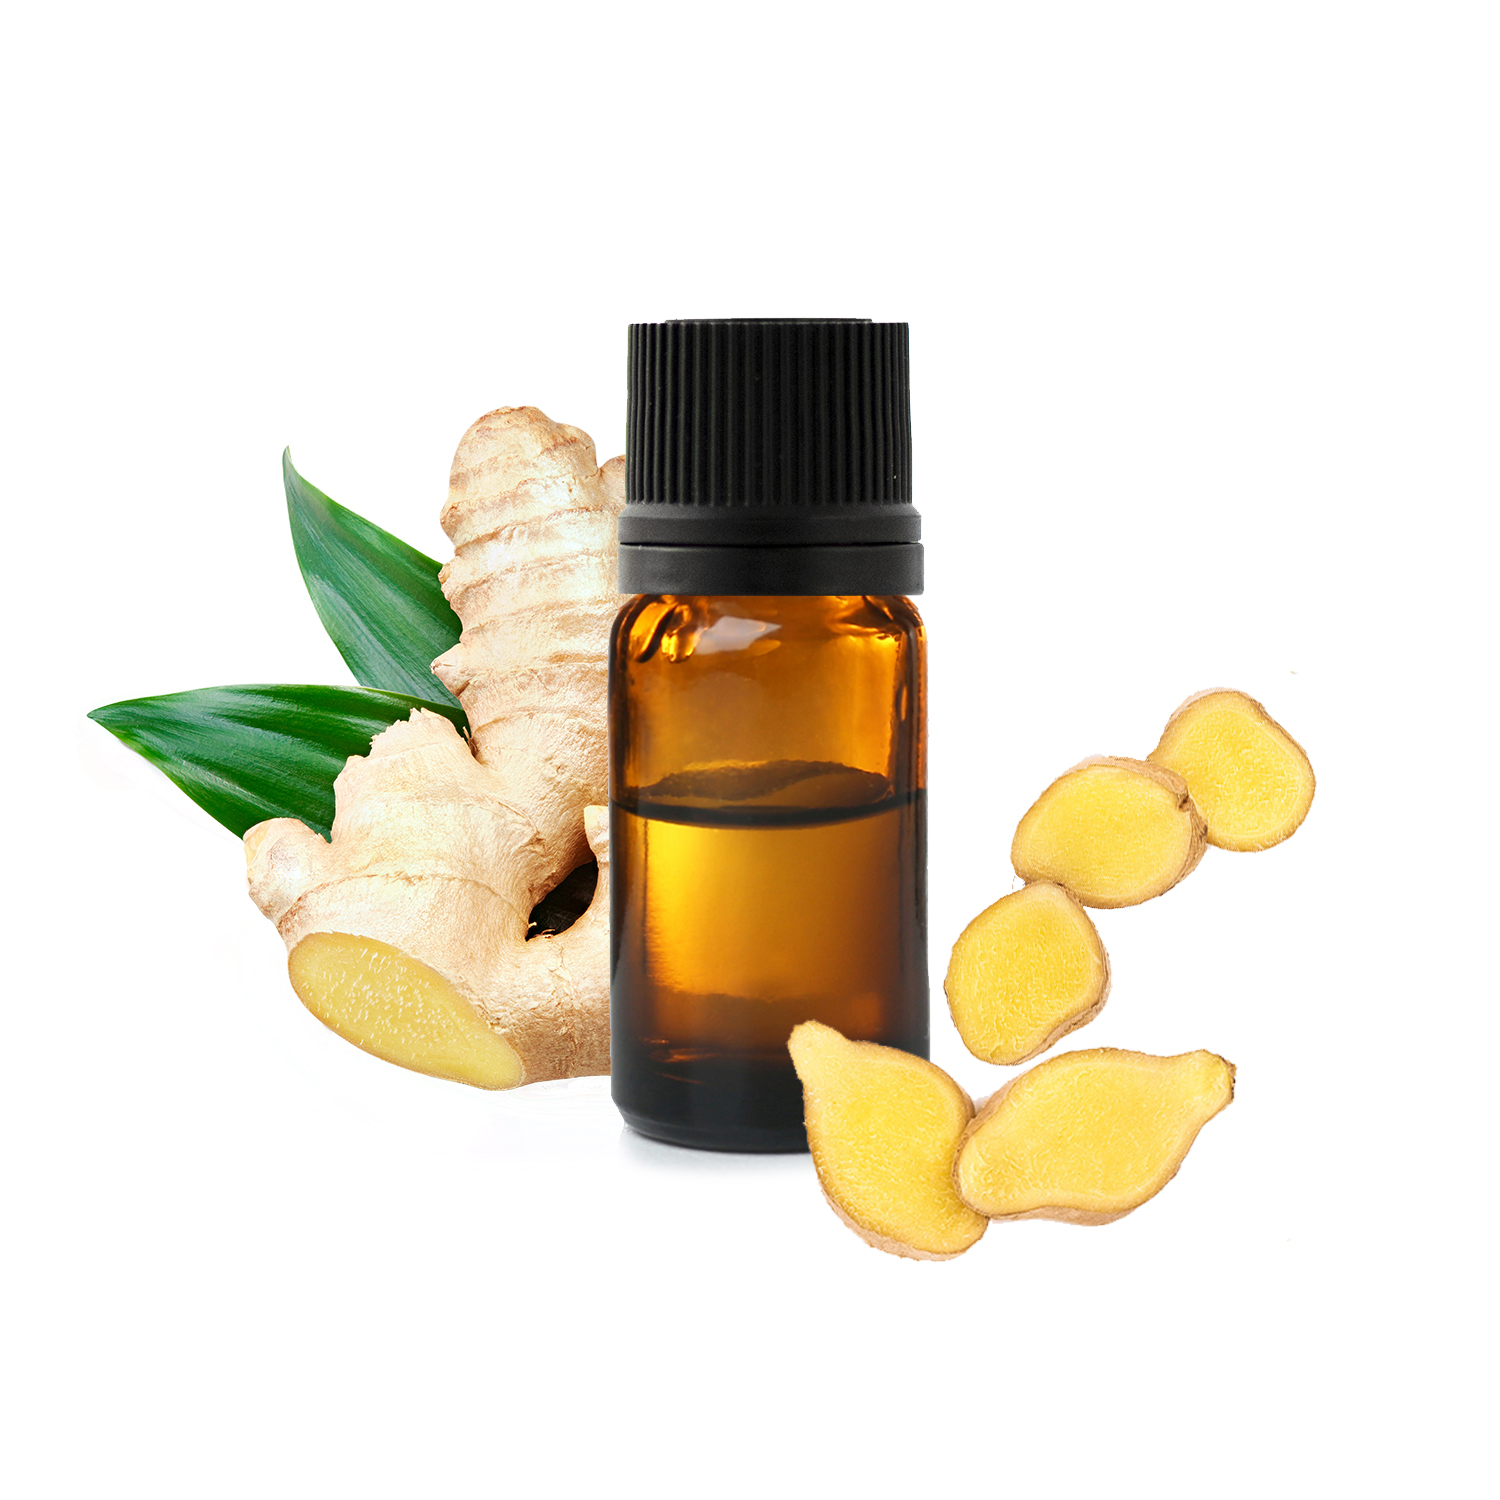 Chute de cheveux & peau douce : l'huile essentielle de Gingembre